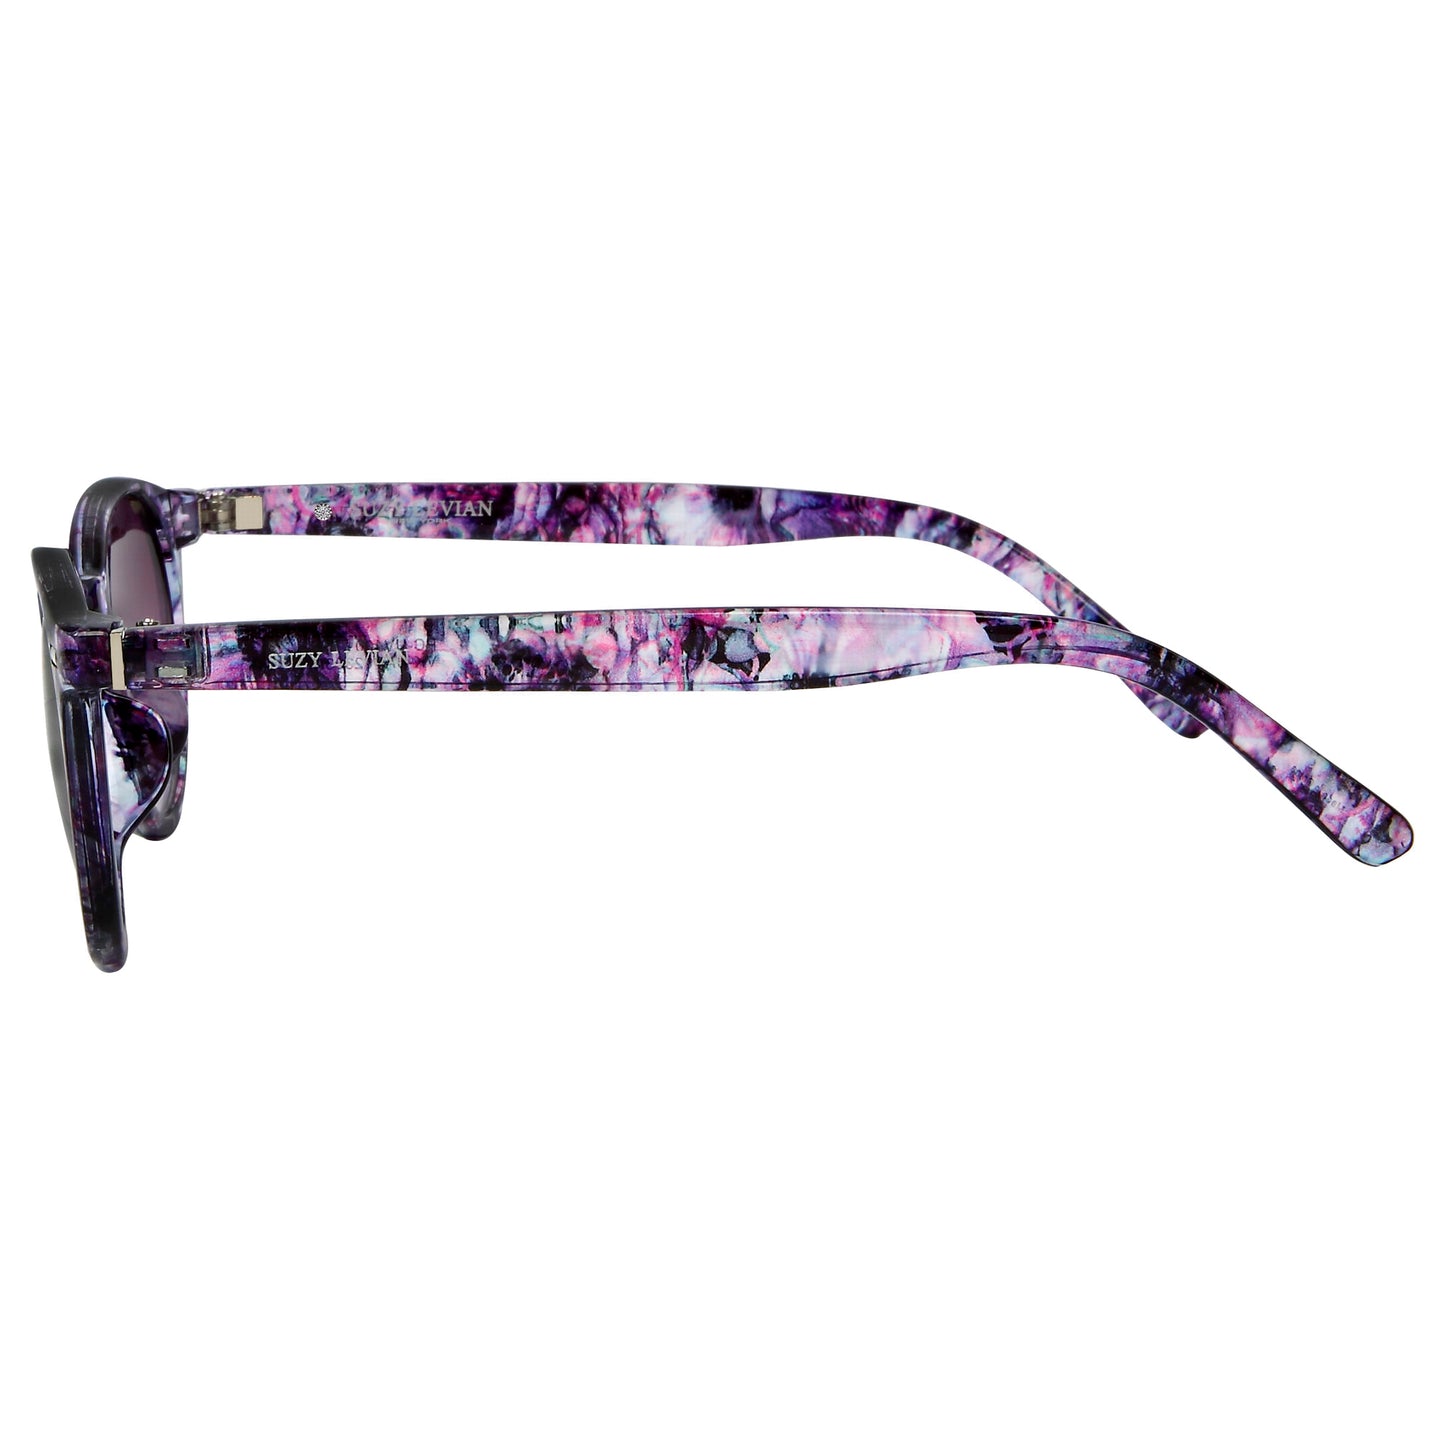 Suzy Levian Women's Purple Tortoise Round Lens Silver Accent Sunglasses